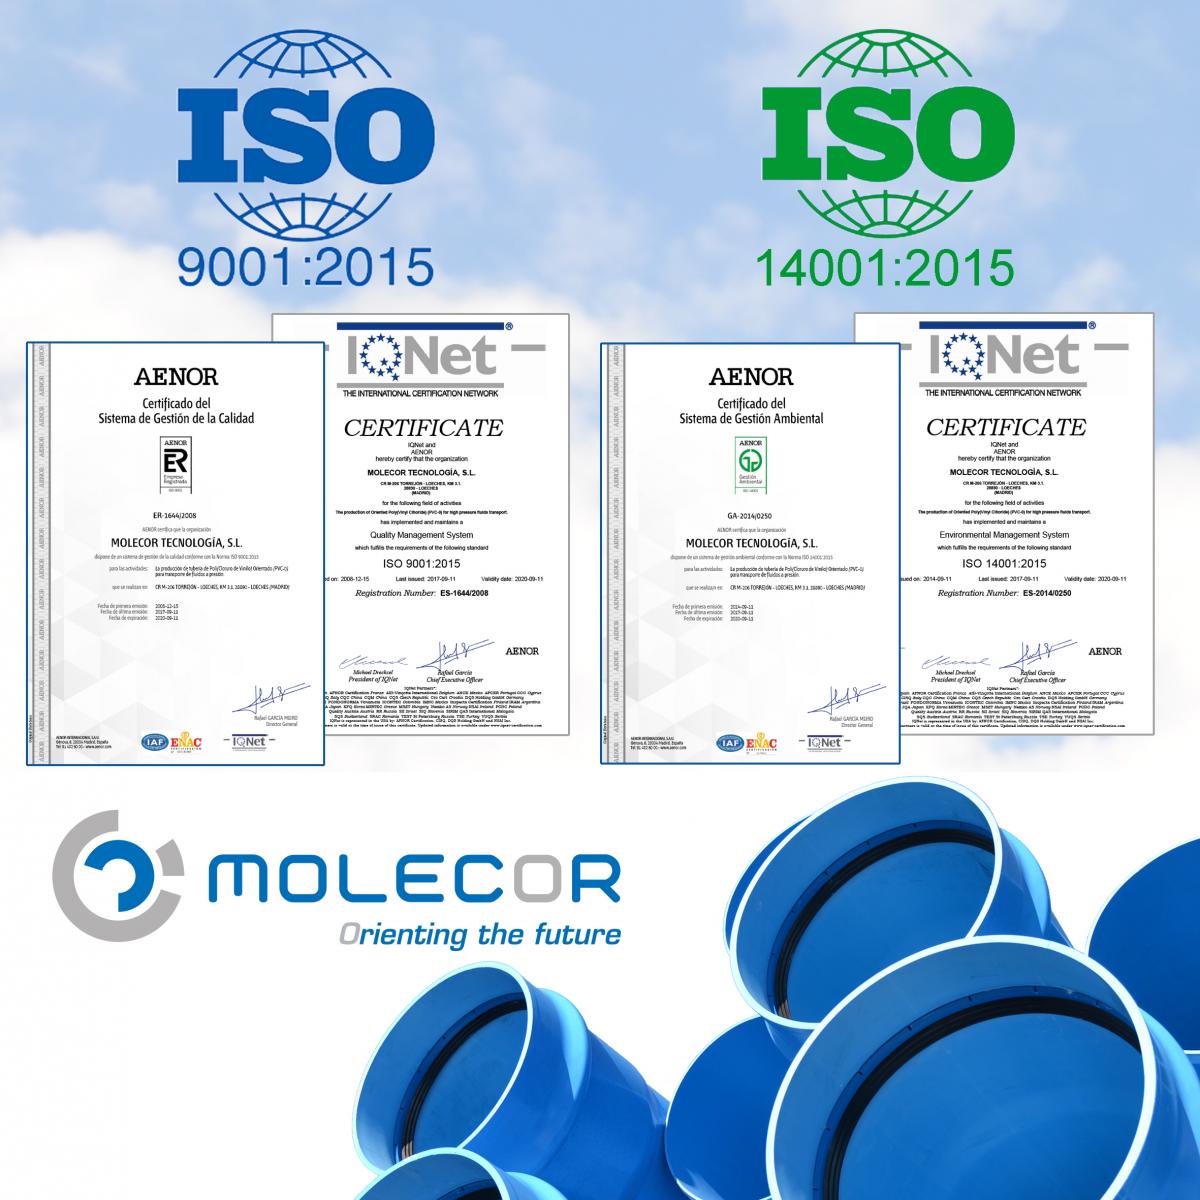 Molecor adapta y certifica su Sistema de Gestión de Calidad y Medio Ambiente según la nueva versión 2015 de las normas UNE-EN ISO 9001 y UNE-EN ISO 14001